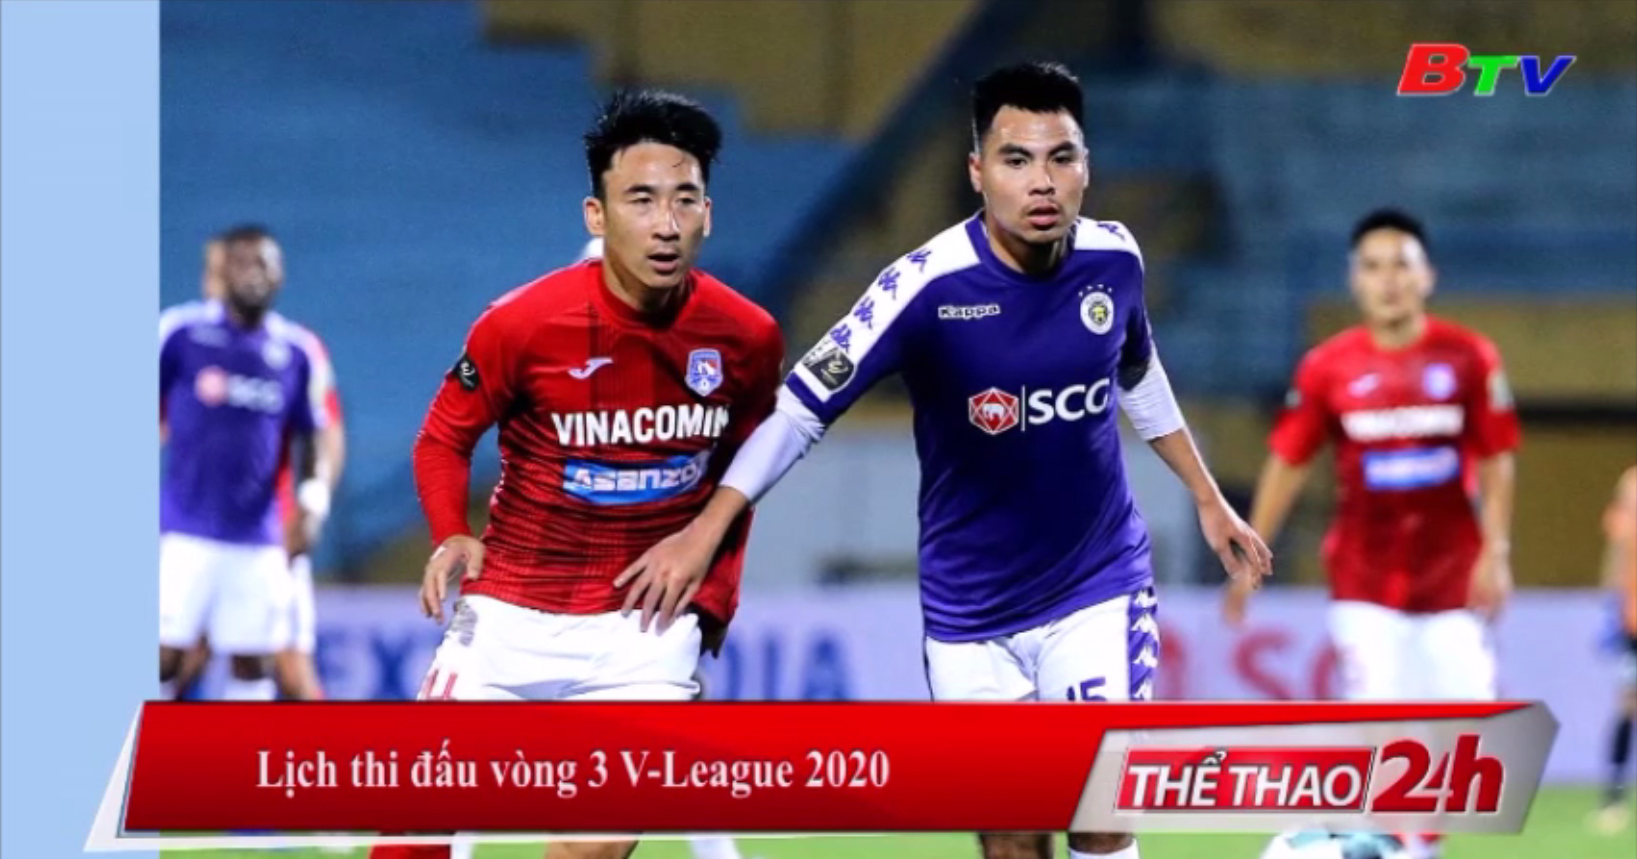 Lịch thi đấu vòng 3 V-League 2020